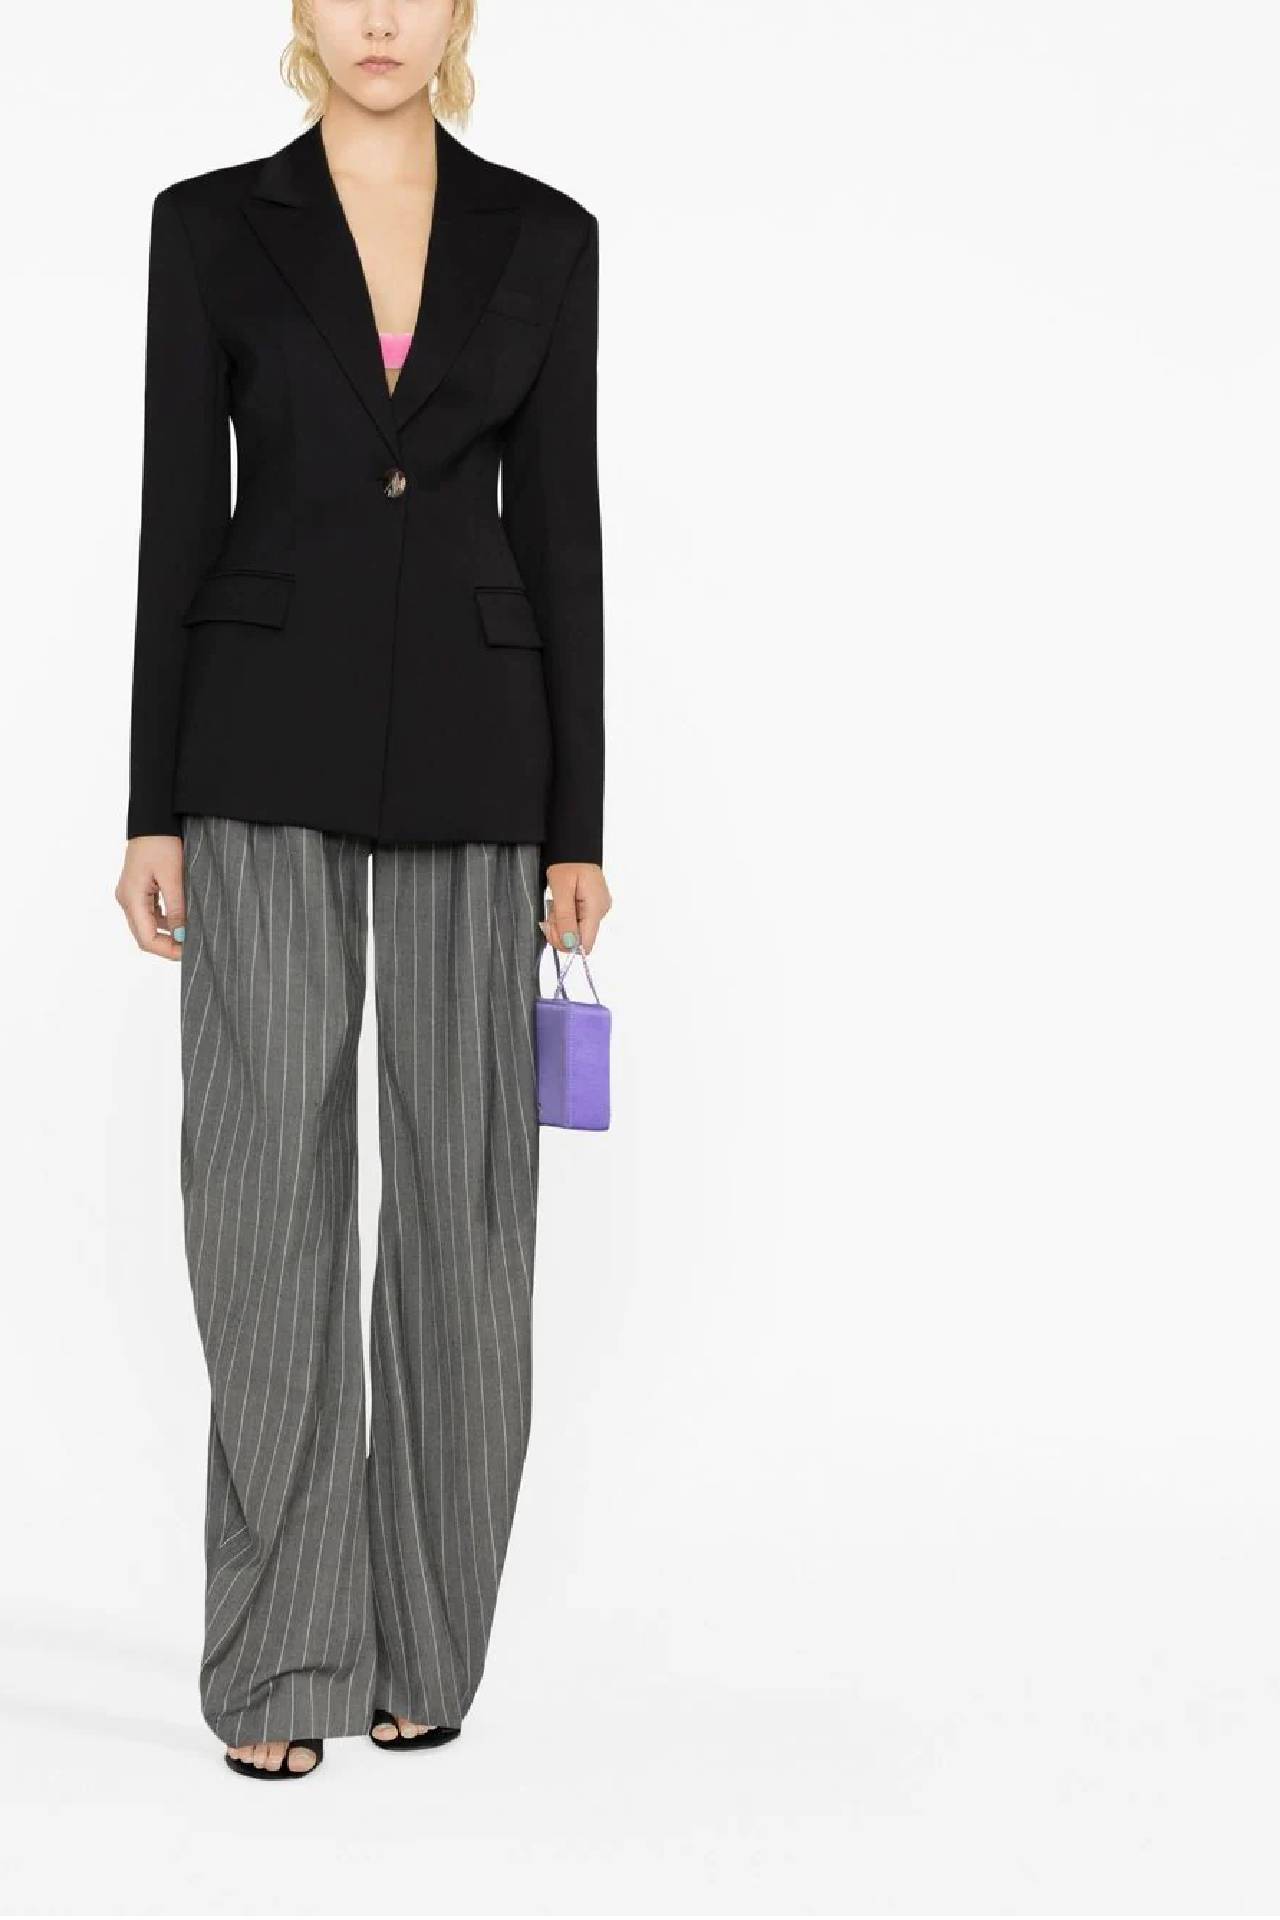 Samara Weaving Wears Louis Vuitton To Sydney's 'Babylon' Premiere - Vogue  Australia